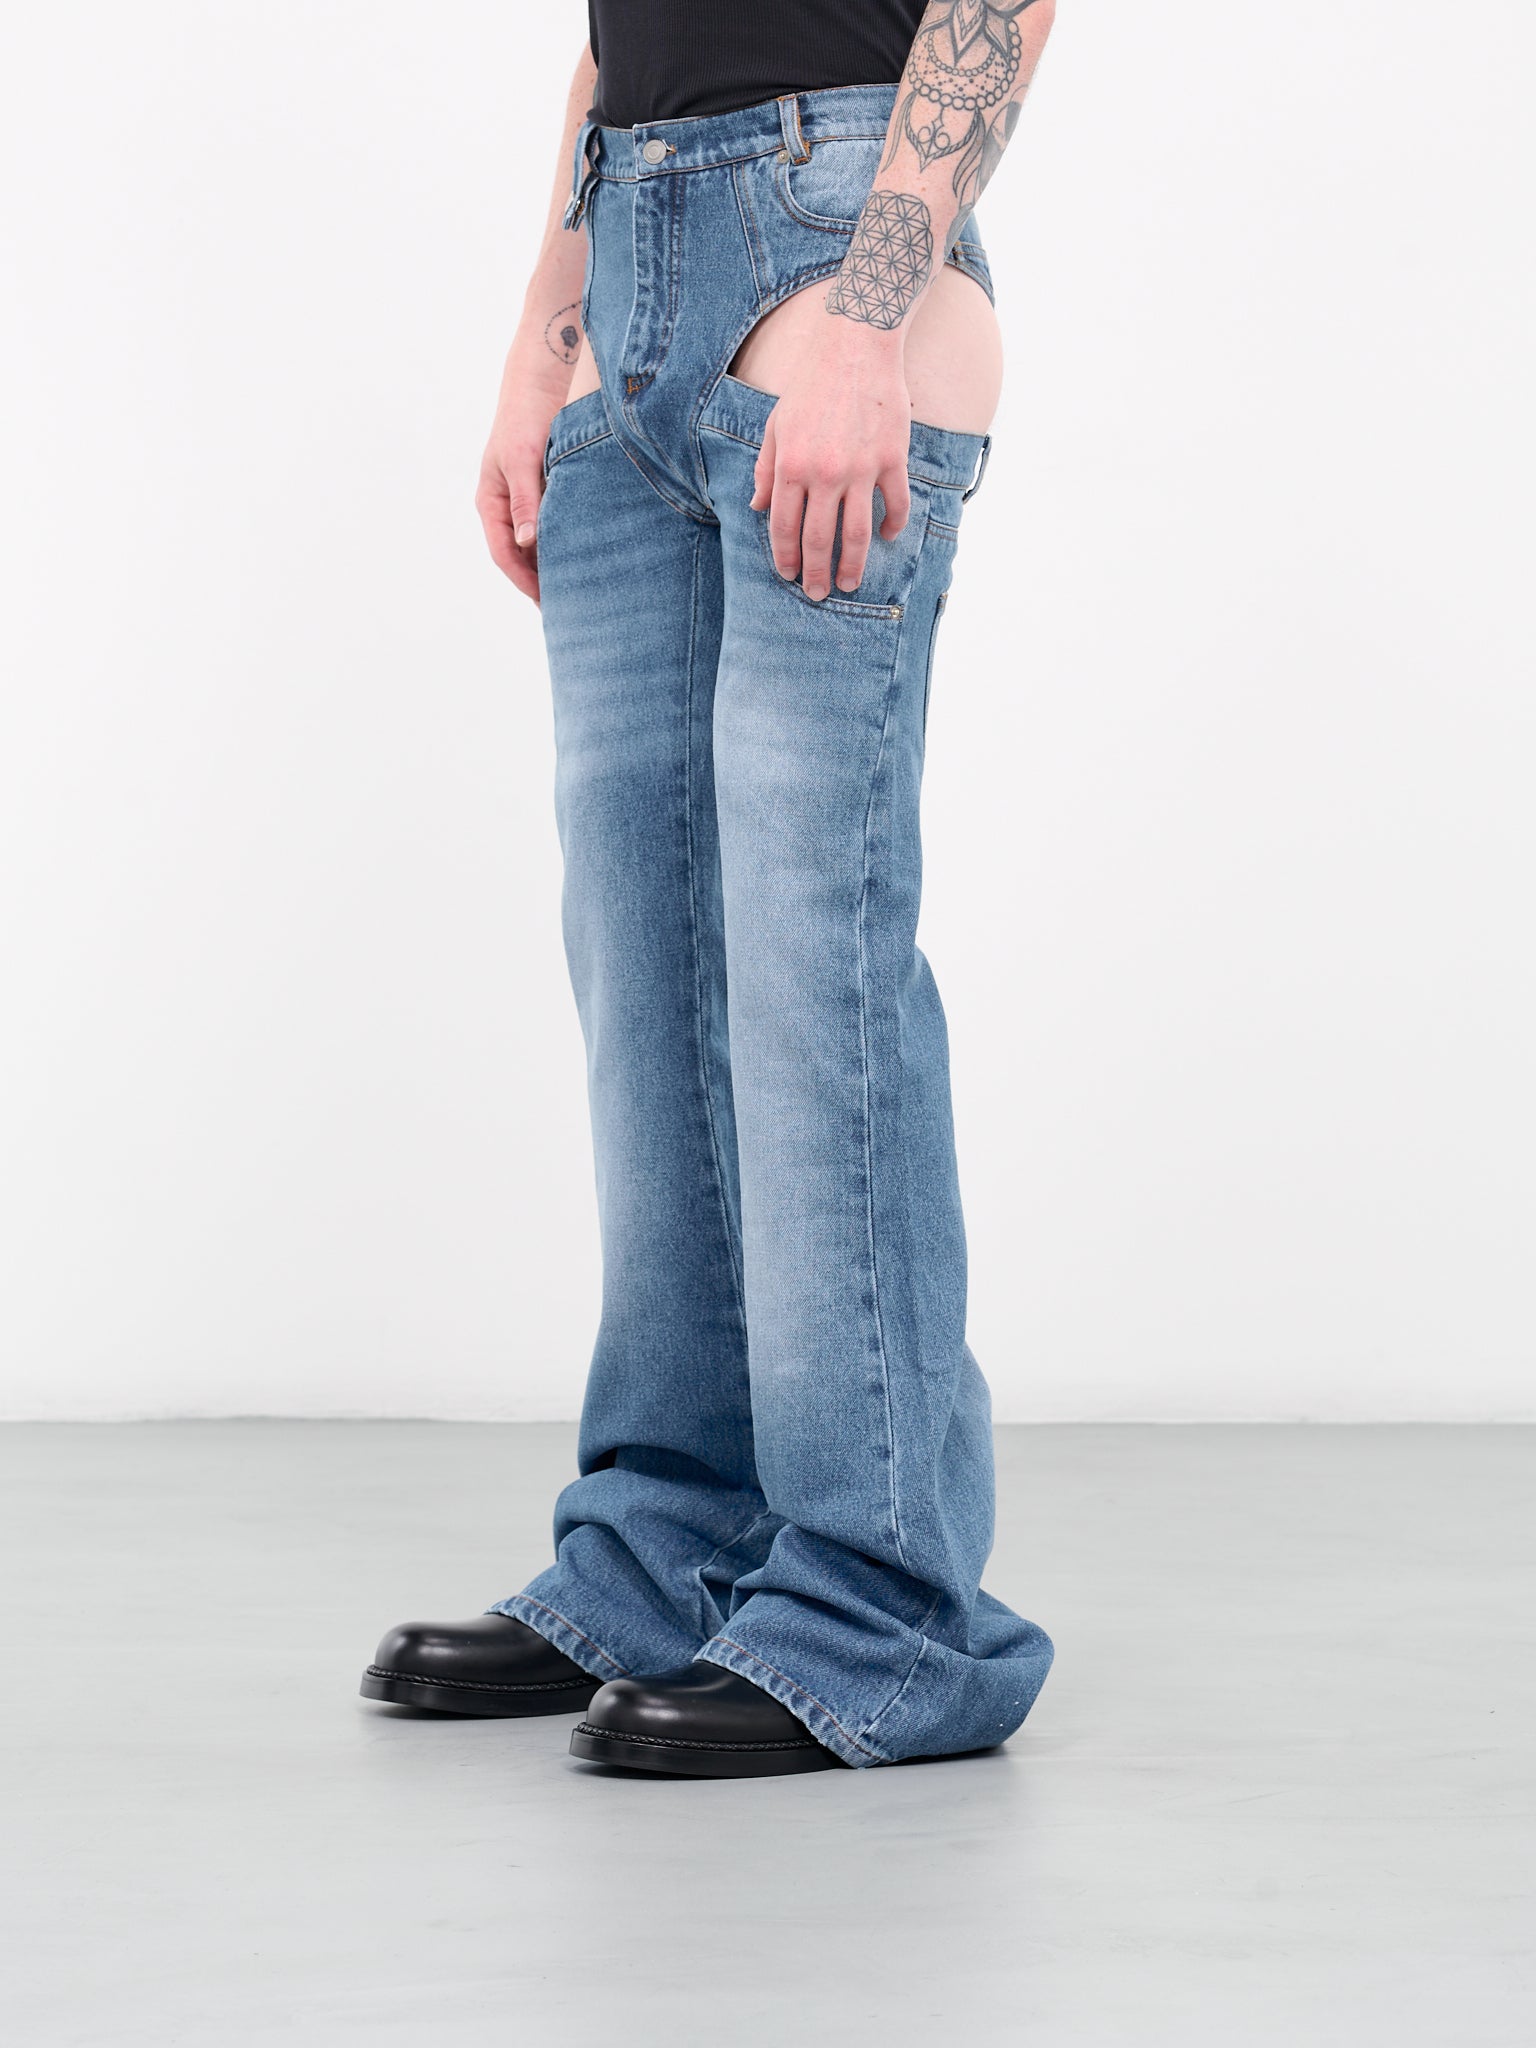 Pantaslip Stonewashed Jeans (DN-004-A-BLUE-STONEWASH)